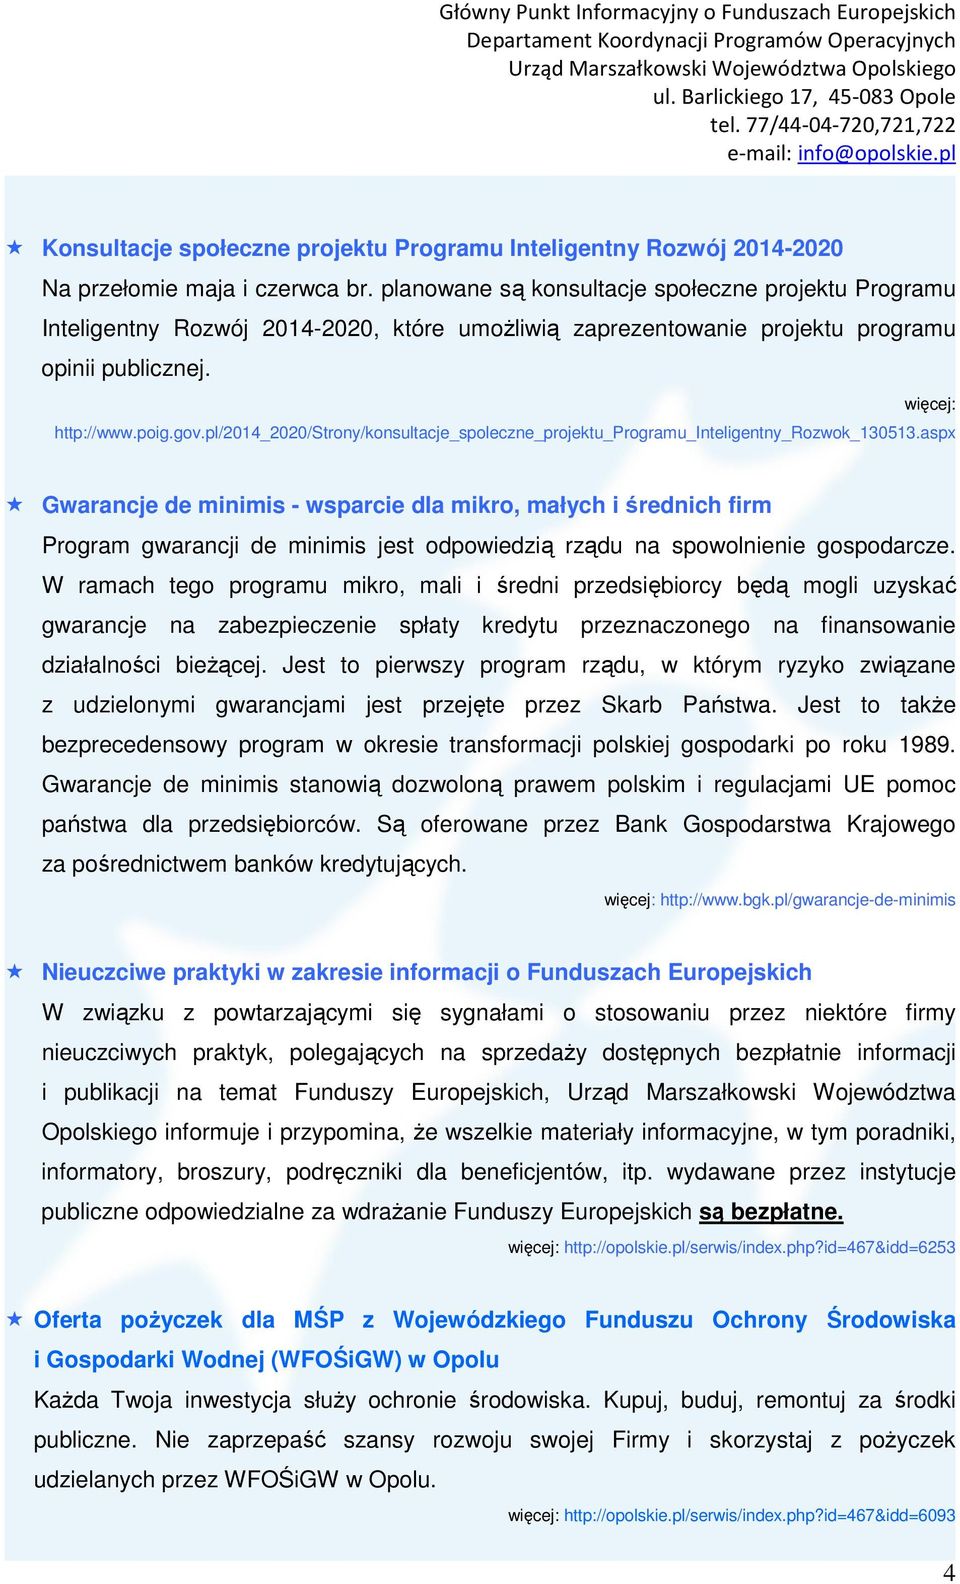 pl/2014_2020/strony/konsultacje_spoleczne_projektu_programu_inteligentny_rozwok_130513.